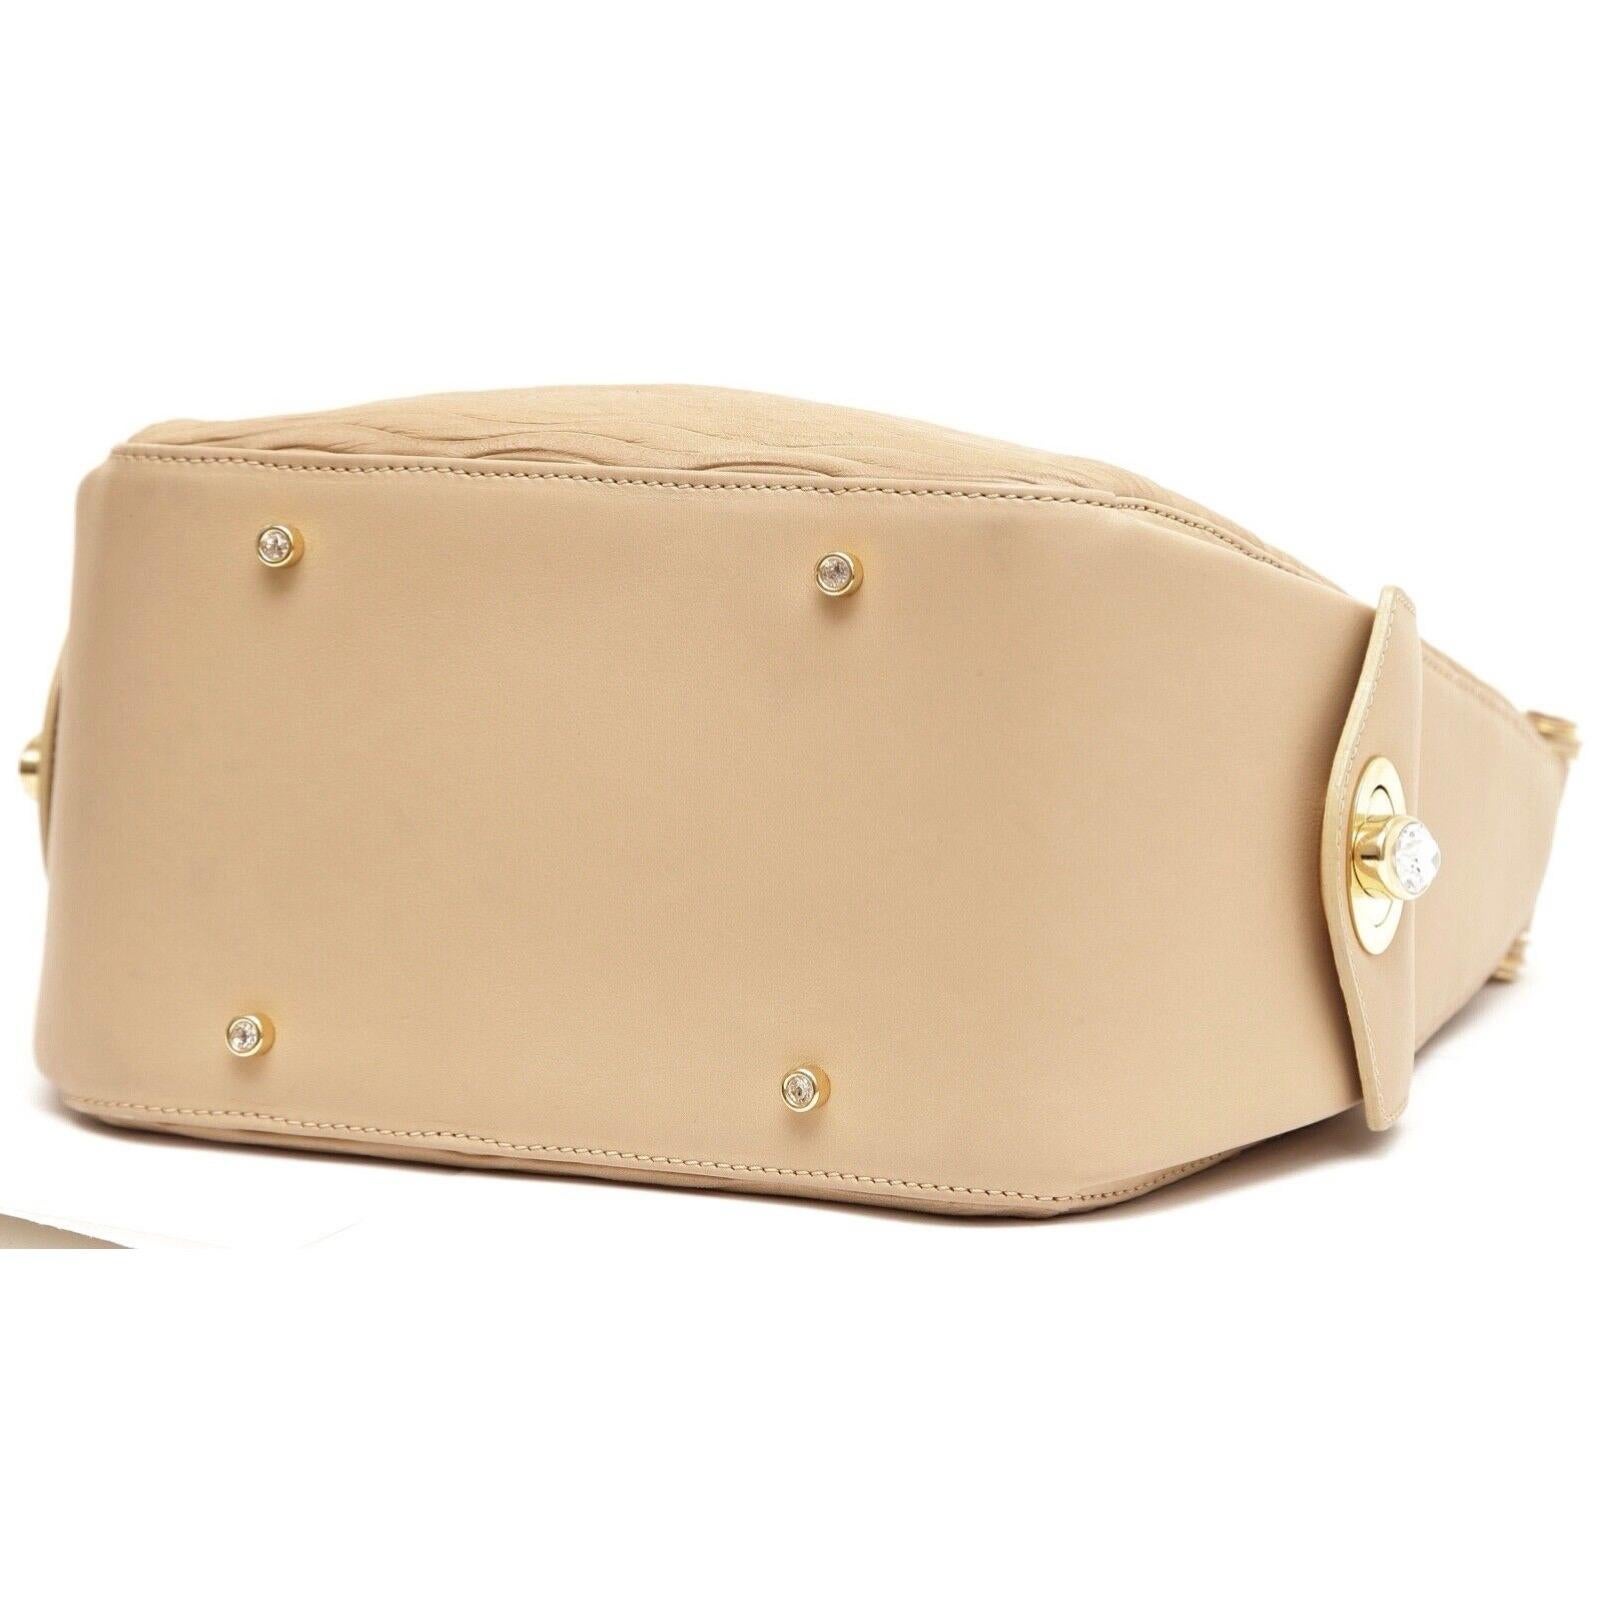 JUDITH LEIBER Leather Shoulder Bag Hobo Beige Gold-Tone HW Crystal Top Zipper For Sale 4